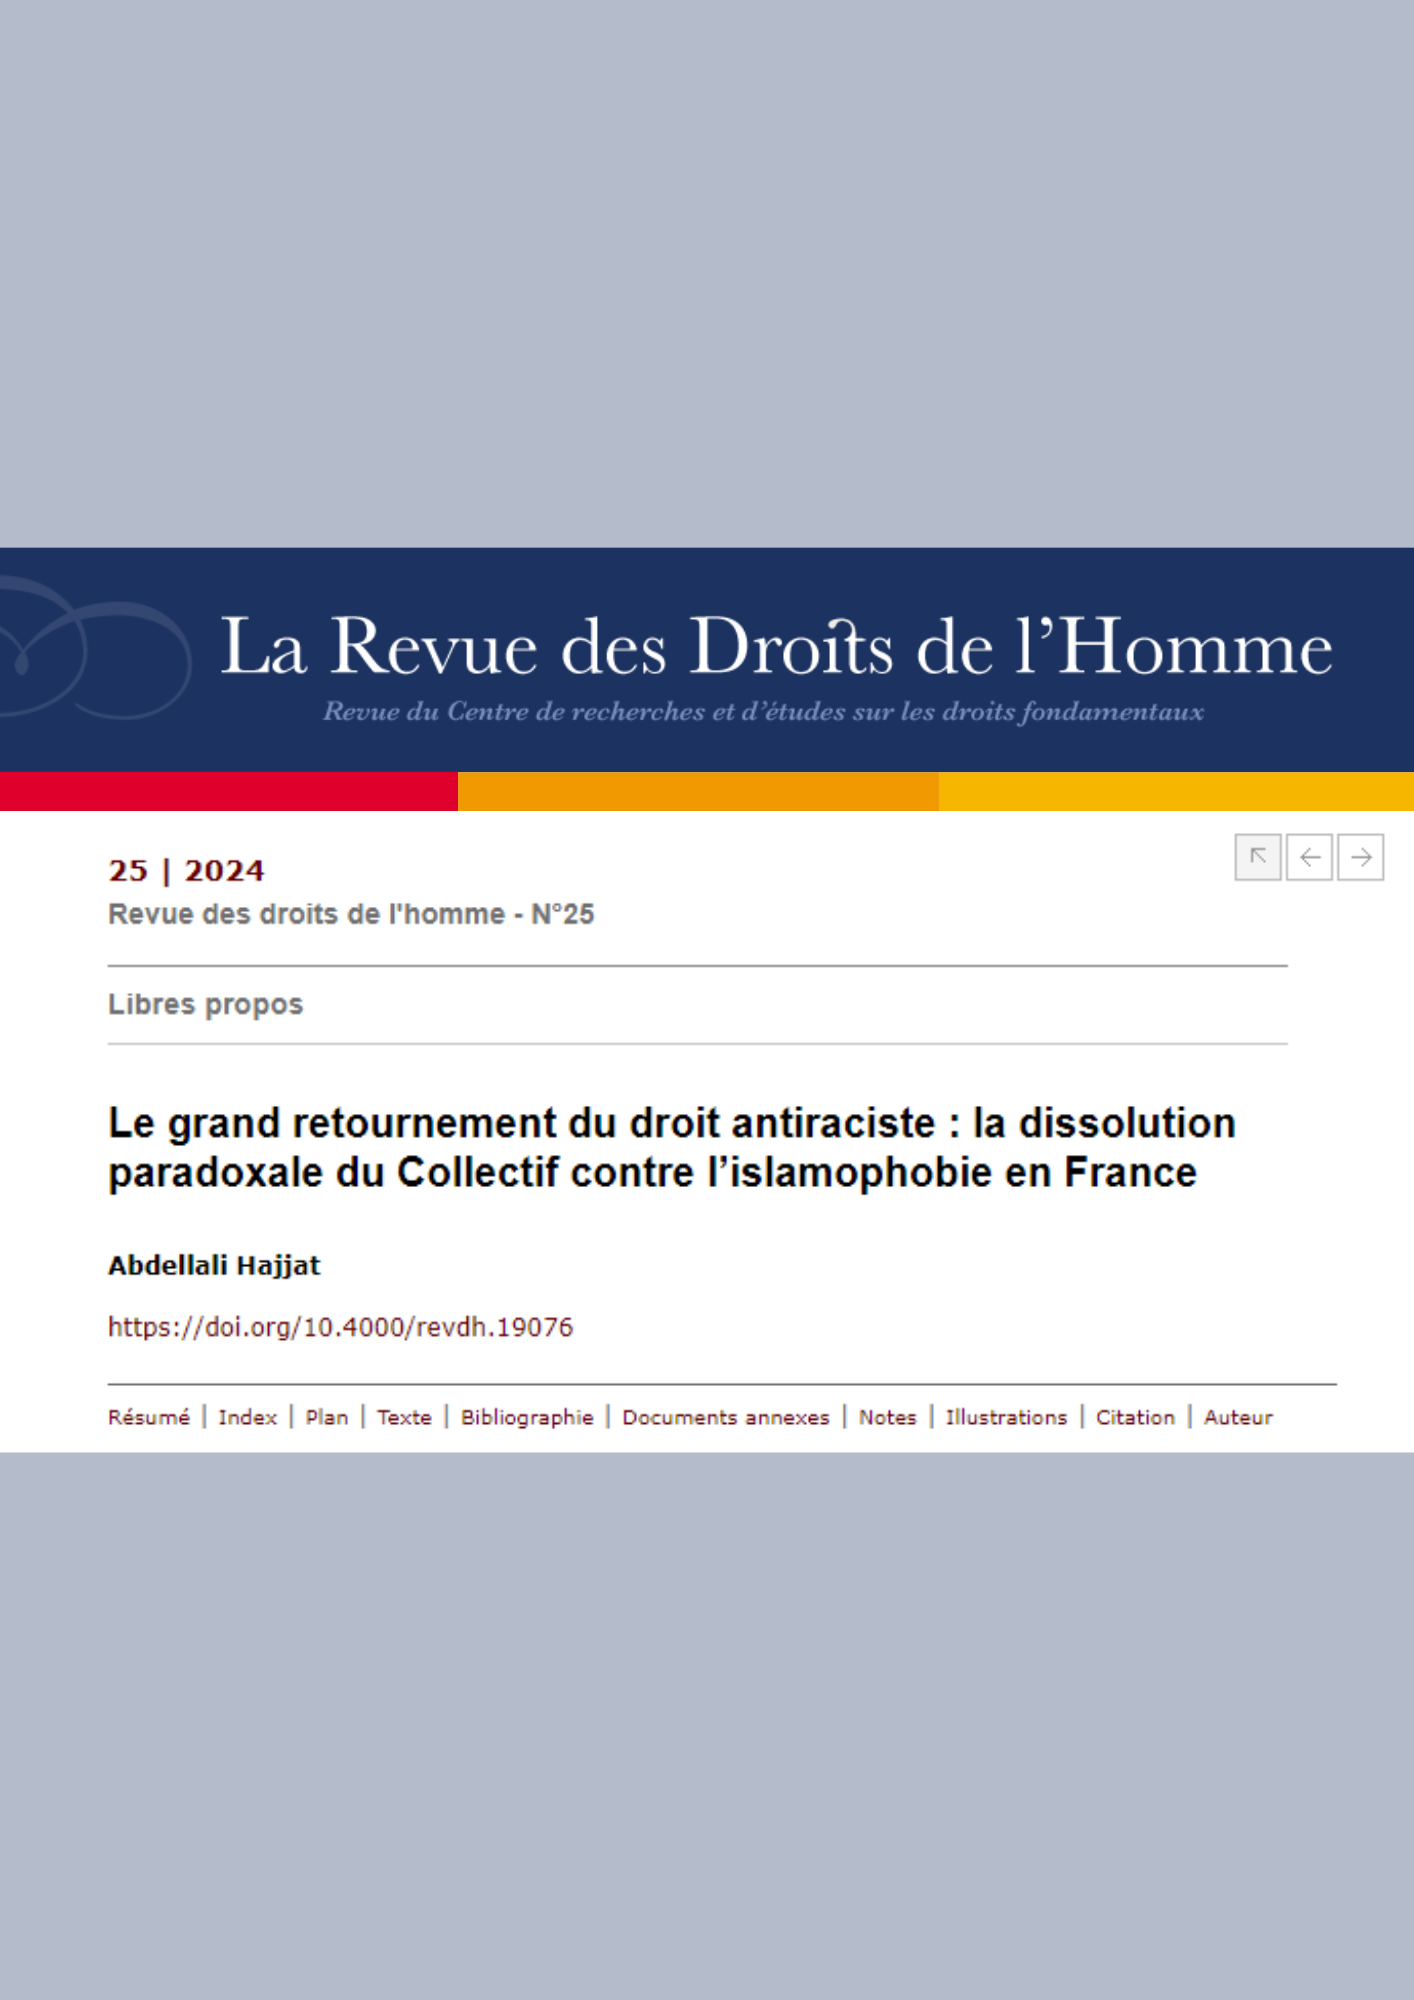 Le grand retournement du droit antiraciste : la dissolution paradoxale du Collectif contre l’islamophobie en France